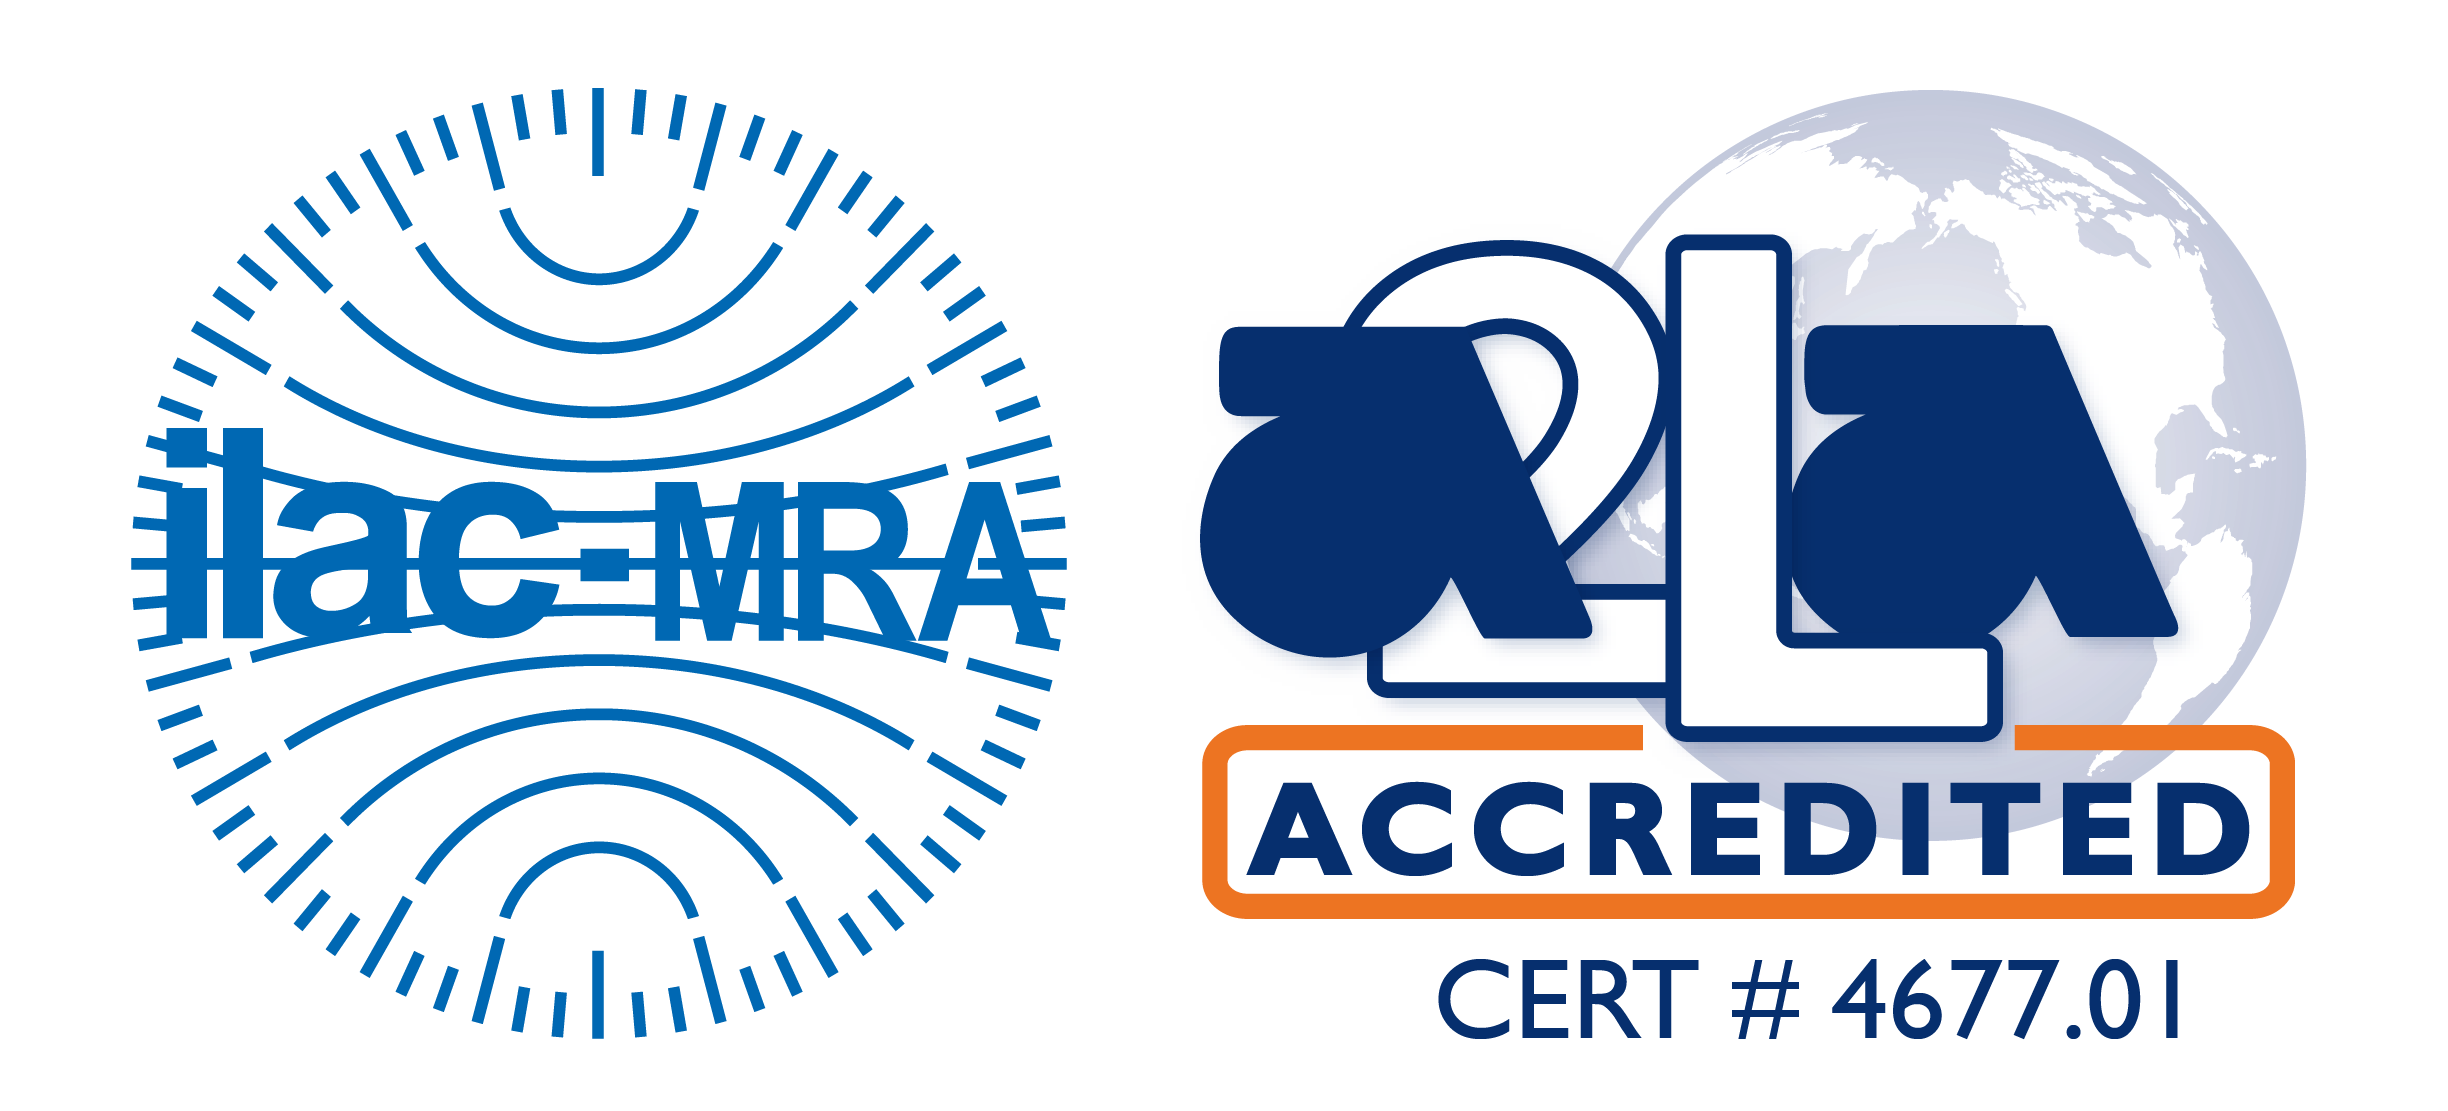 ilac-MRA A2LA Accredited